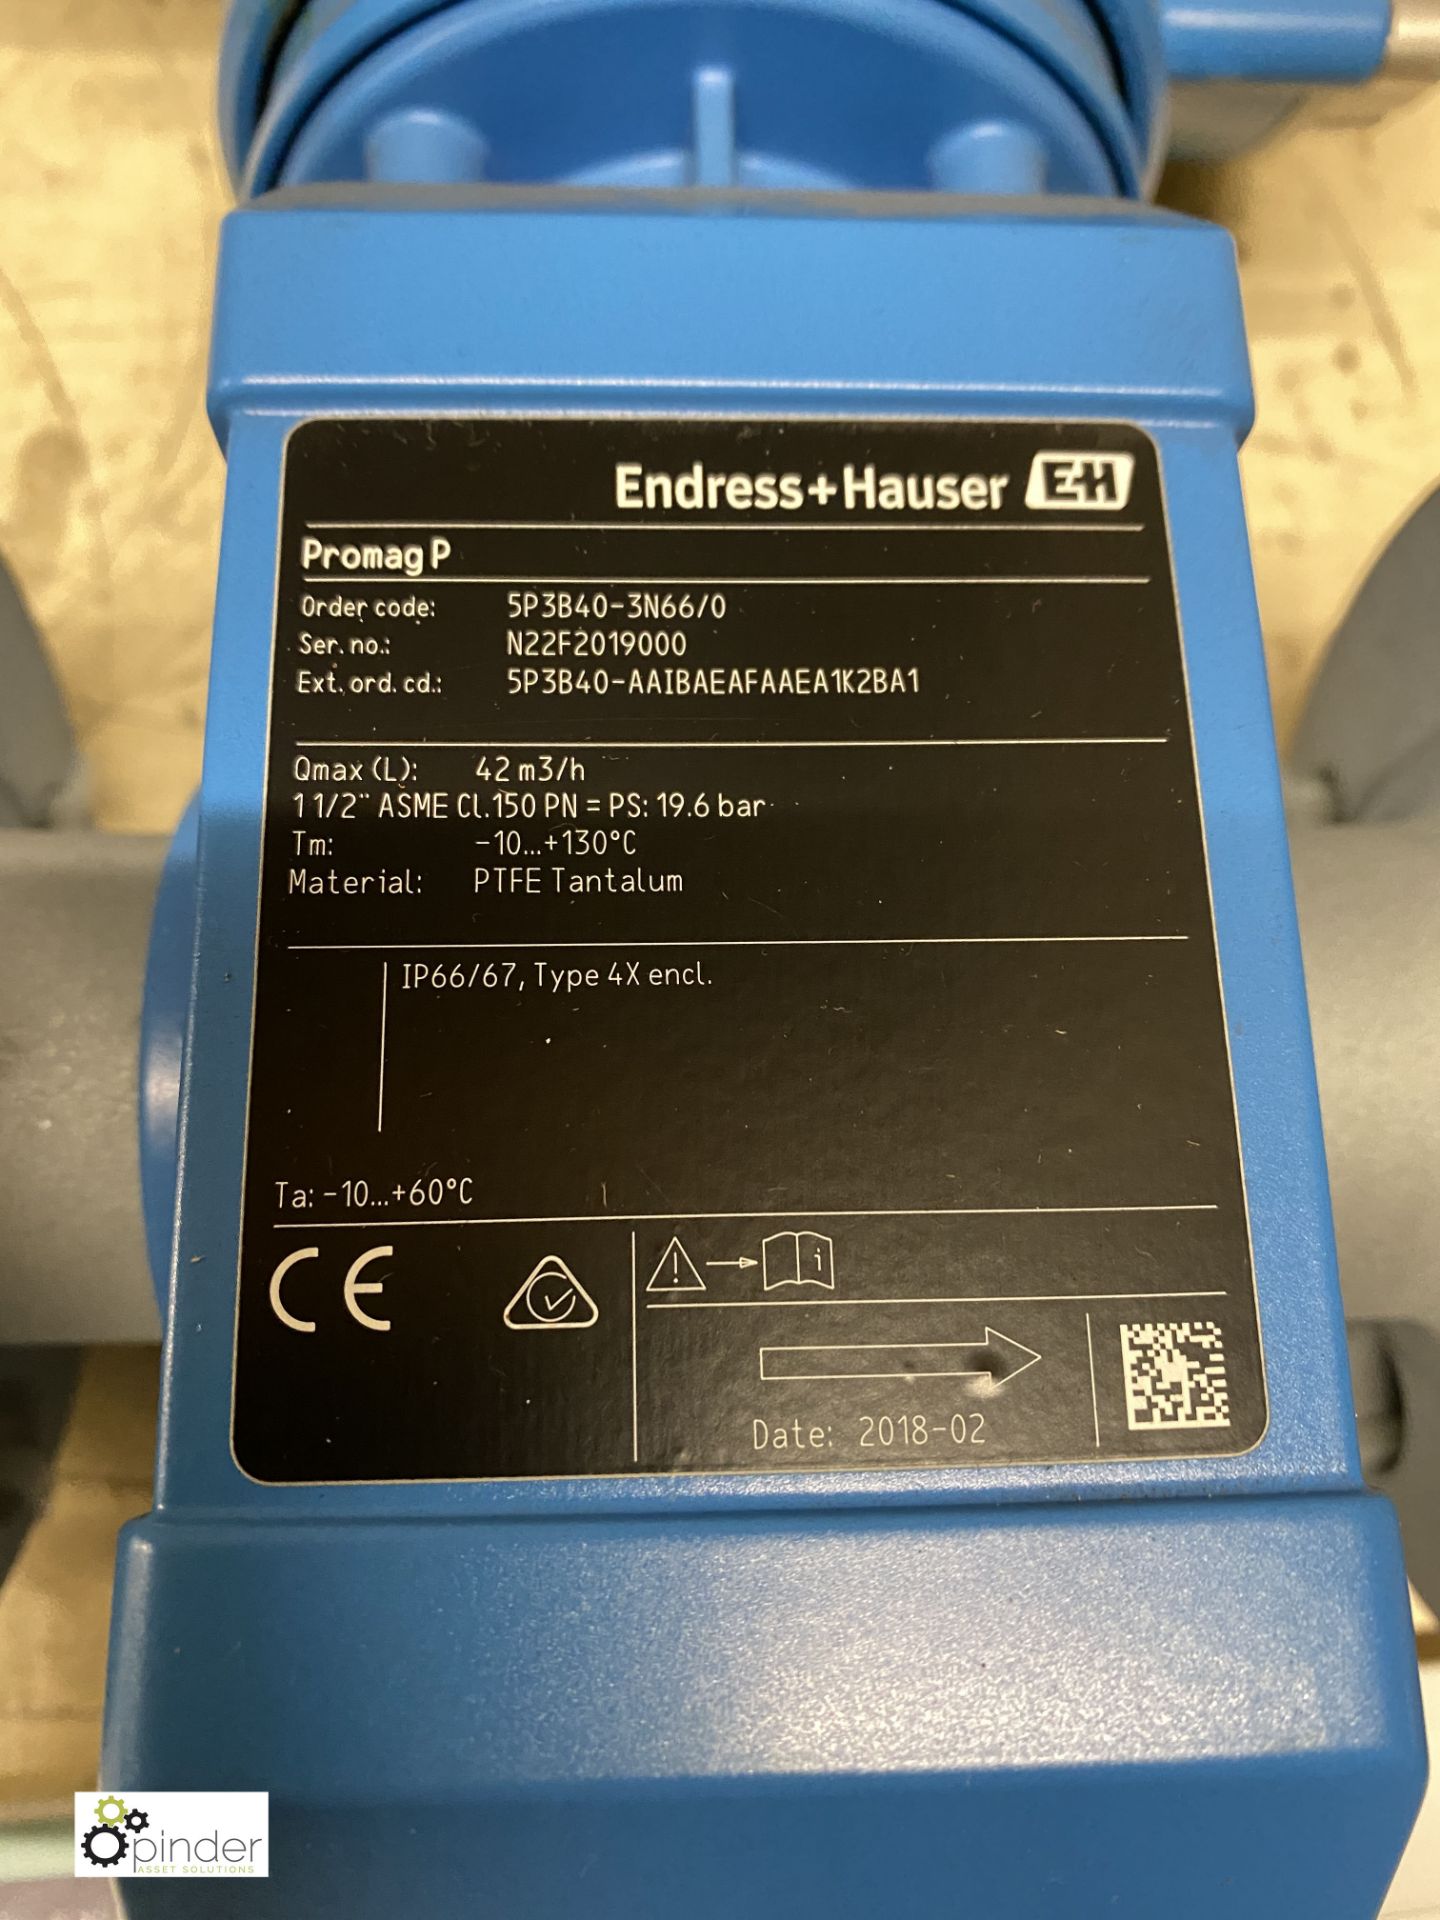 Endress & Hauser Promag P300 SP3B40-3N66/0 S/N N22 - Image 2 of 4